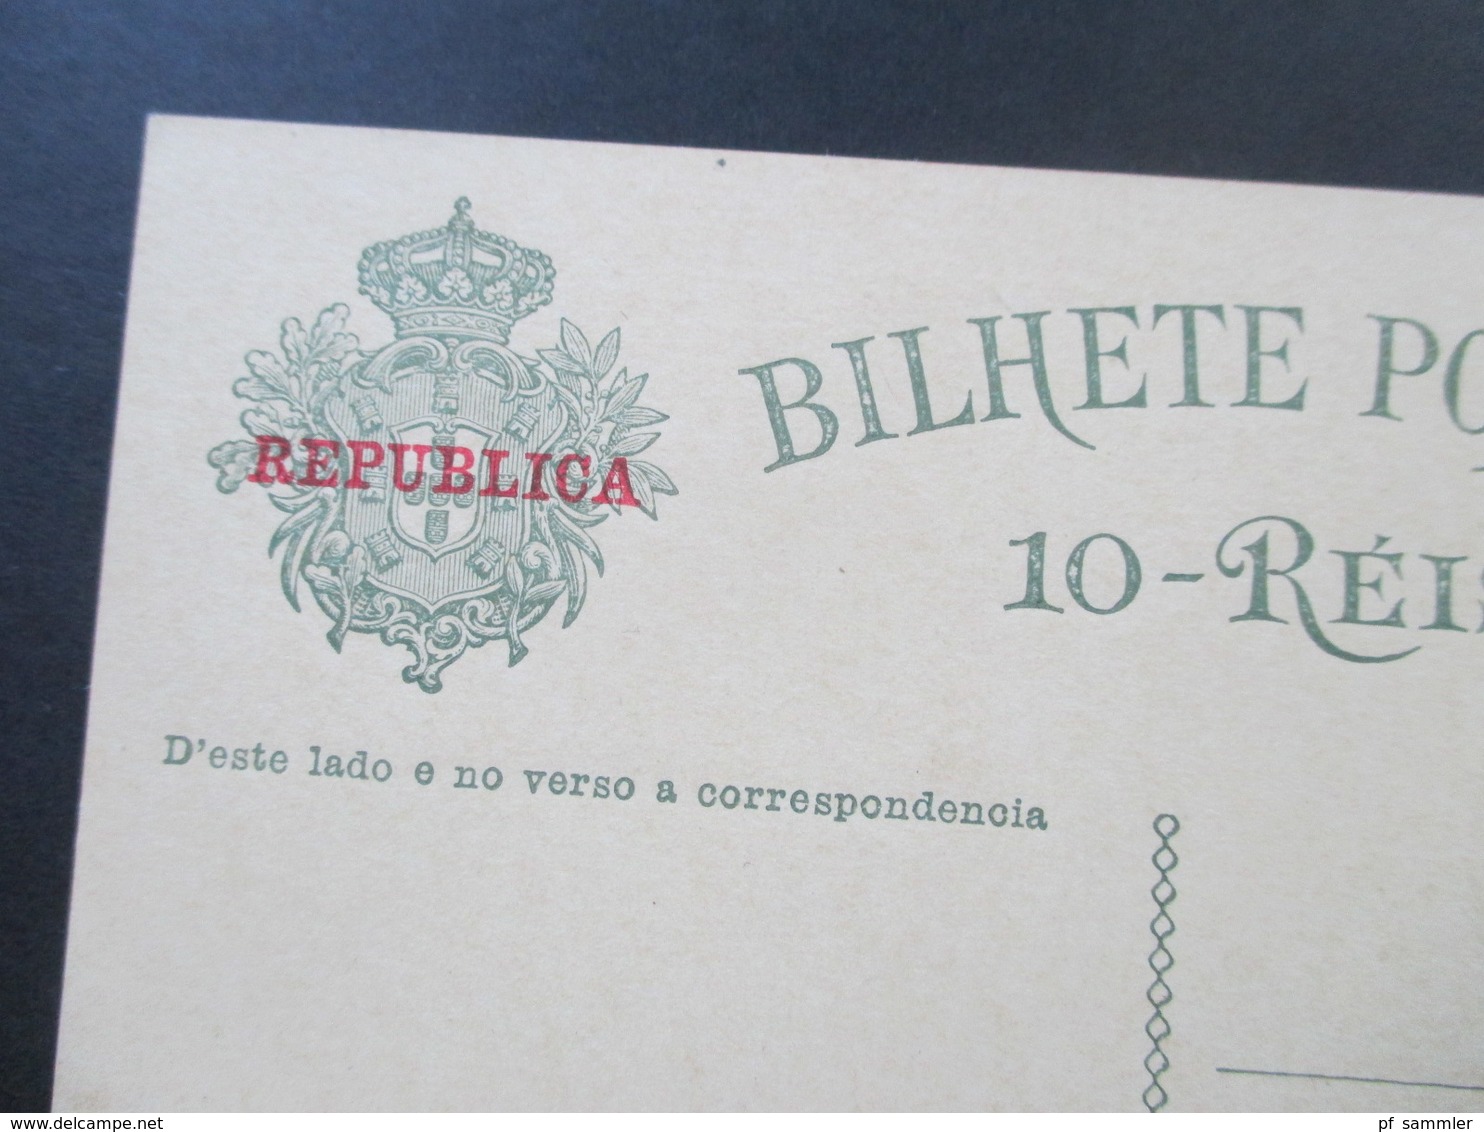 Portugal 1910 Ganzsache P 55 Roter Handstempelaufdruck Republica. Ungebraucht Und Guter Zustand! - Postal Stationery